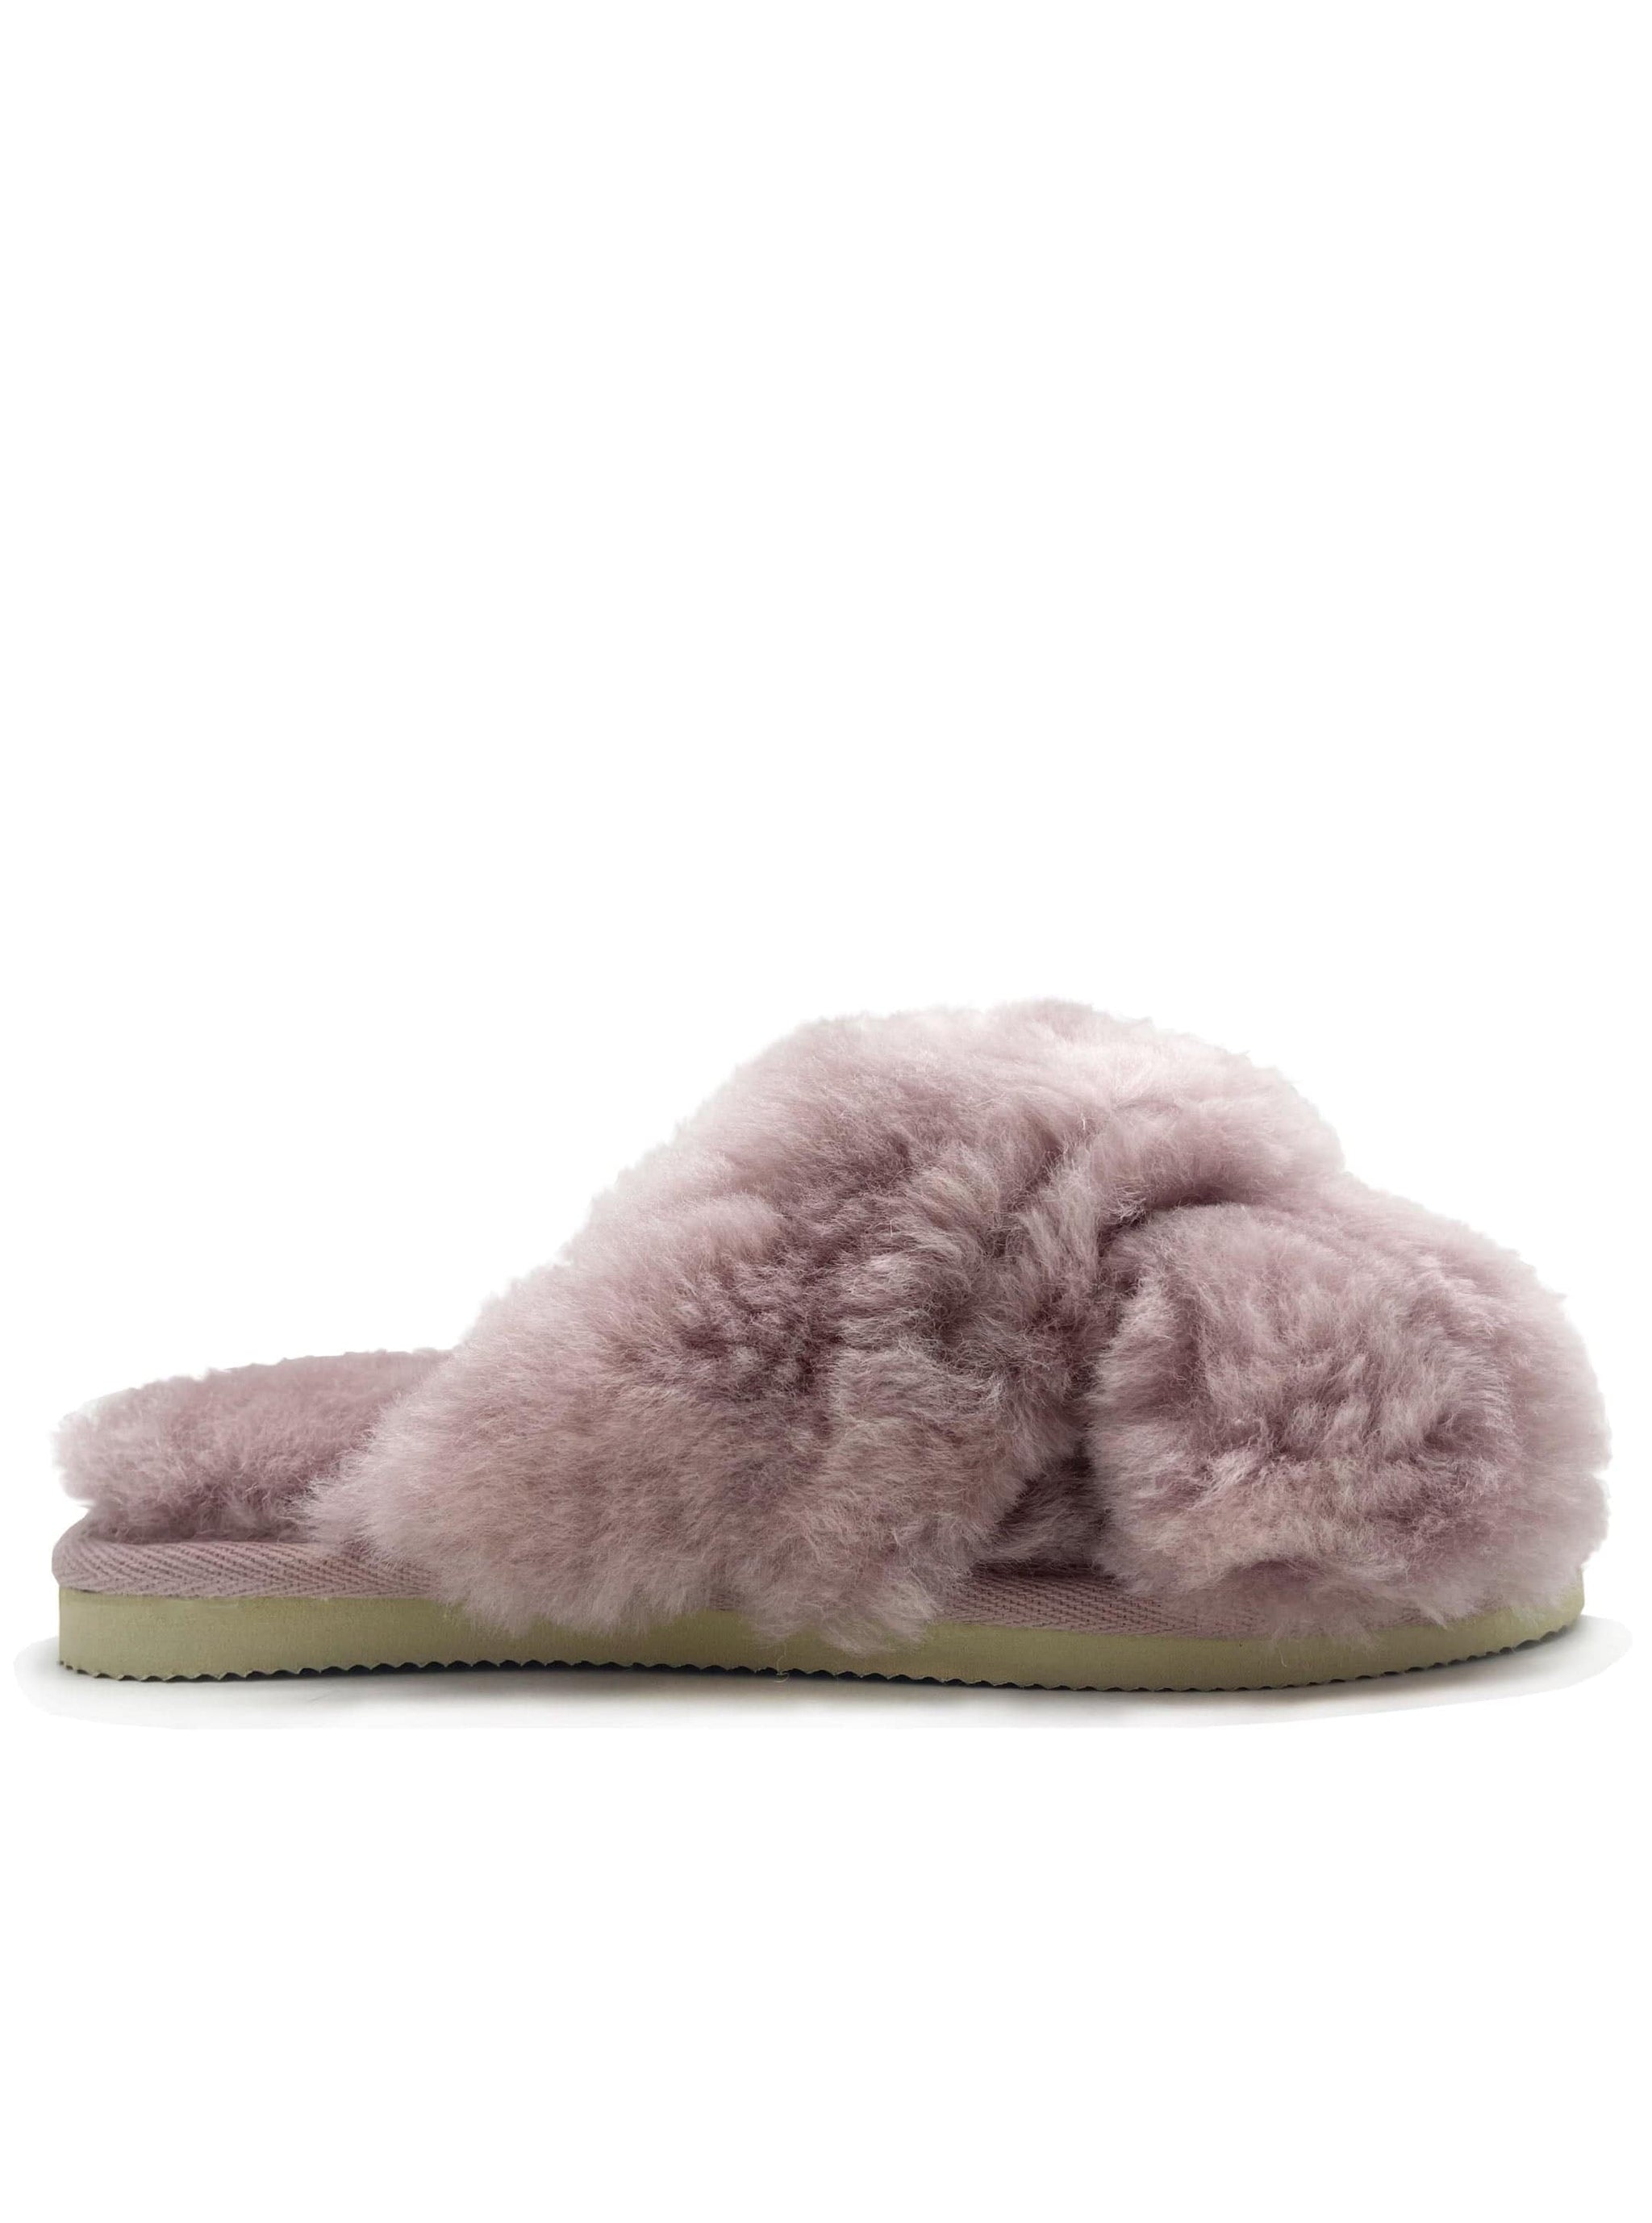 NAT 2 sko Cross Sandal (W) i fåreskindslæder bæredygtig mode etisk mode